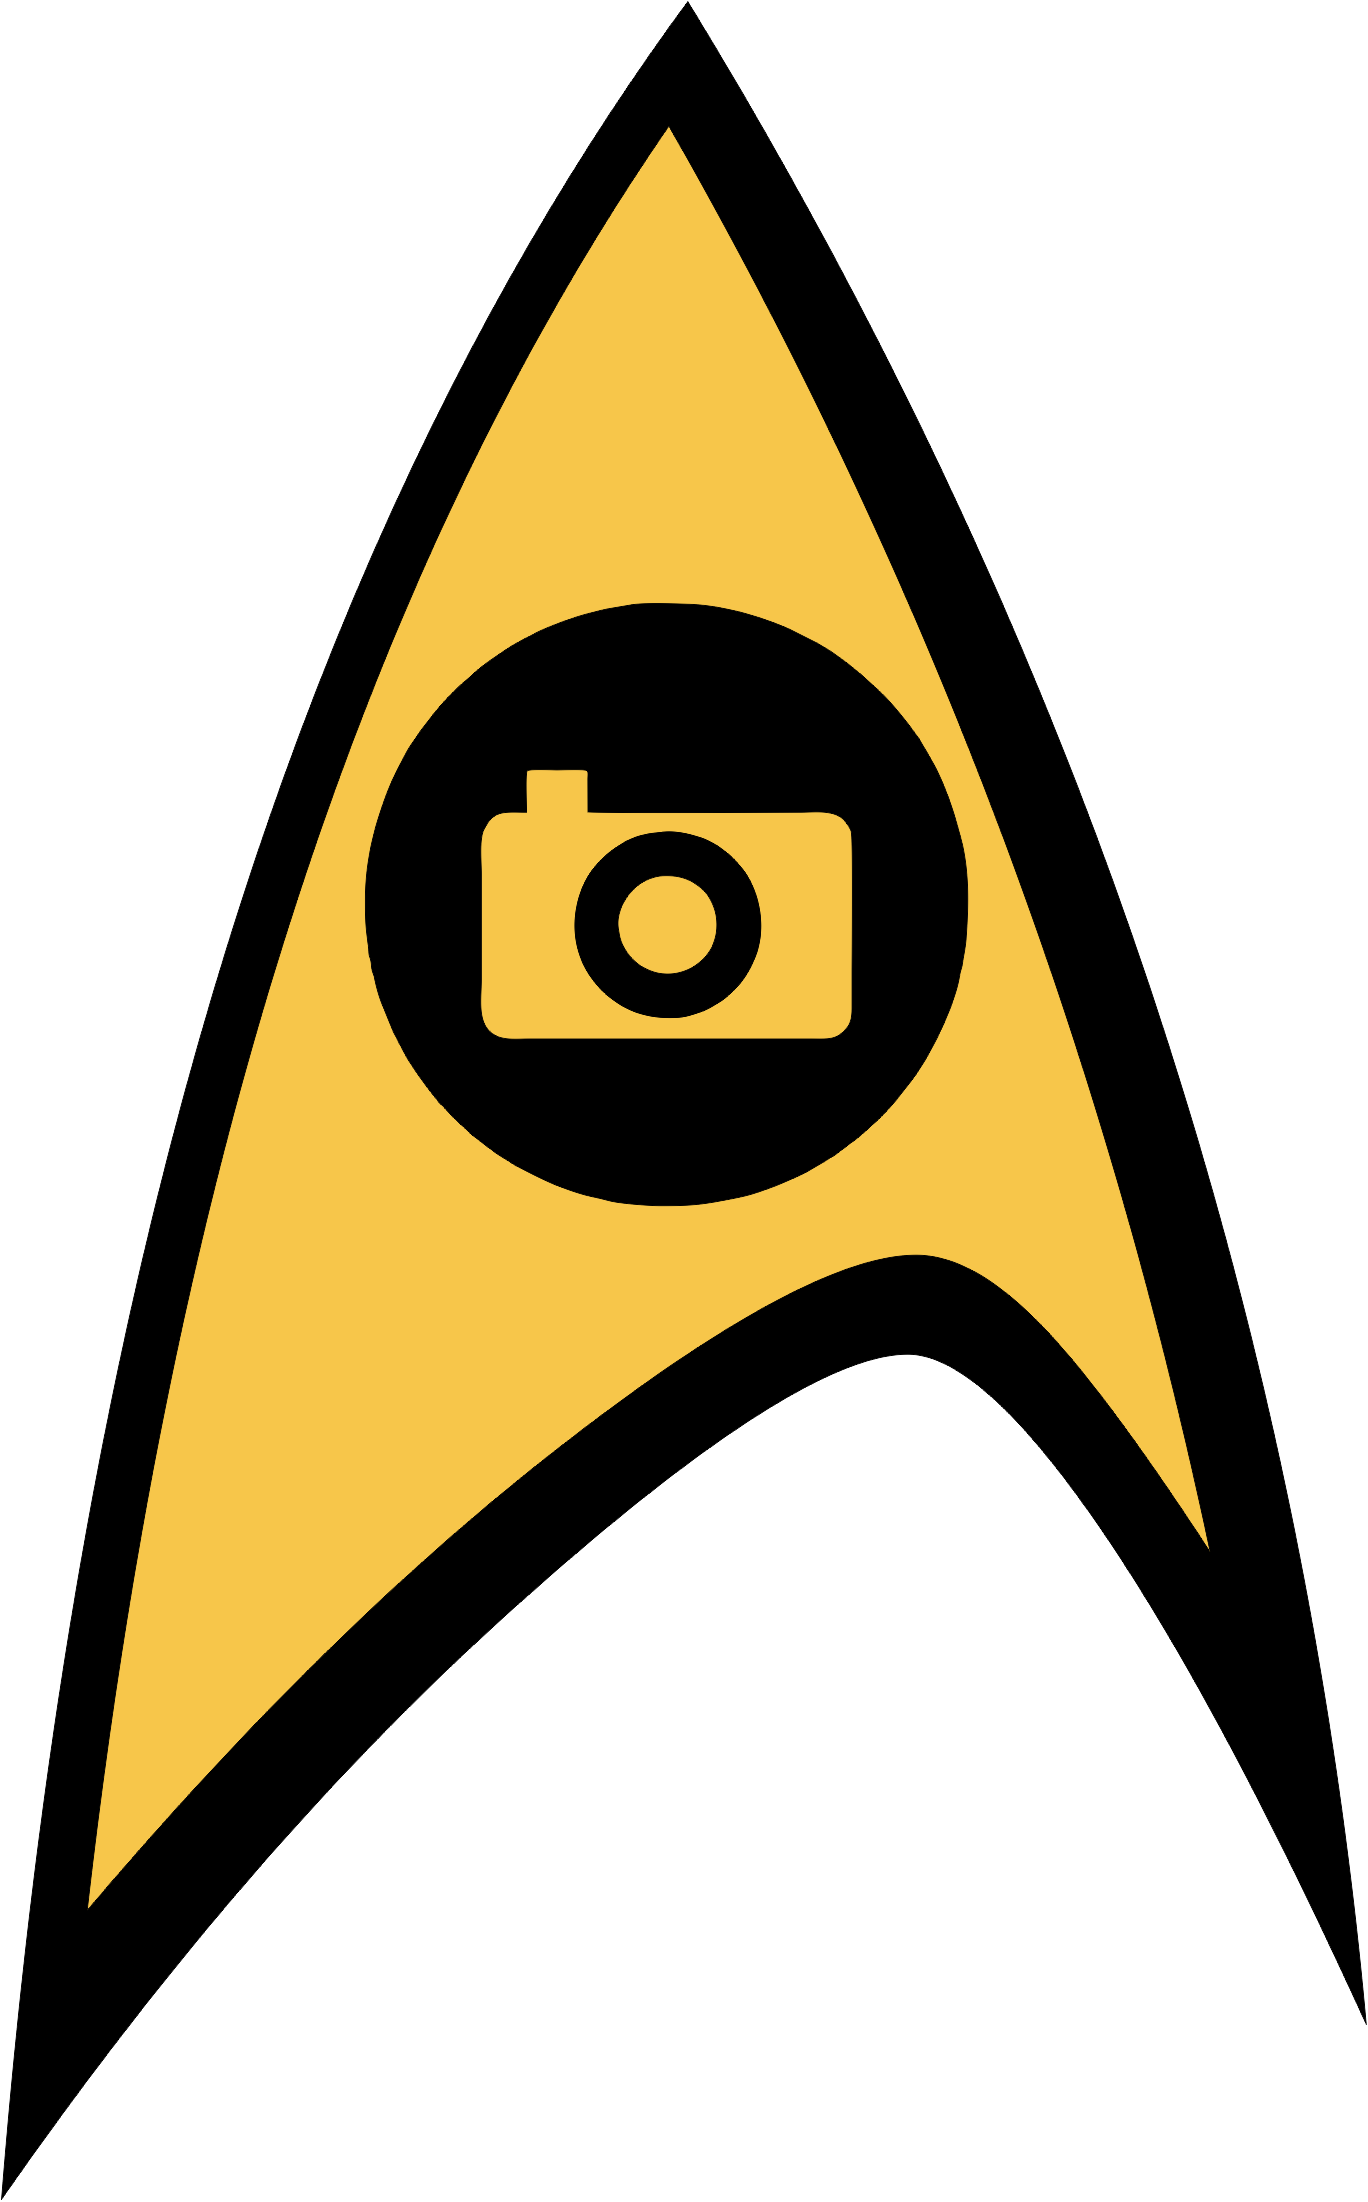 Download PNG image - Star Trek PNG Background Image 